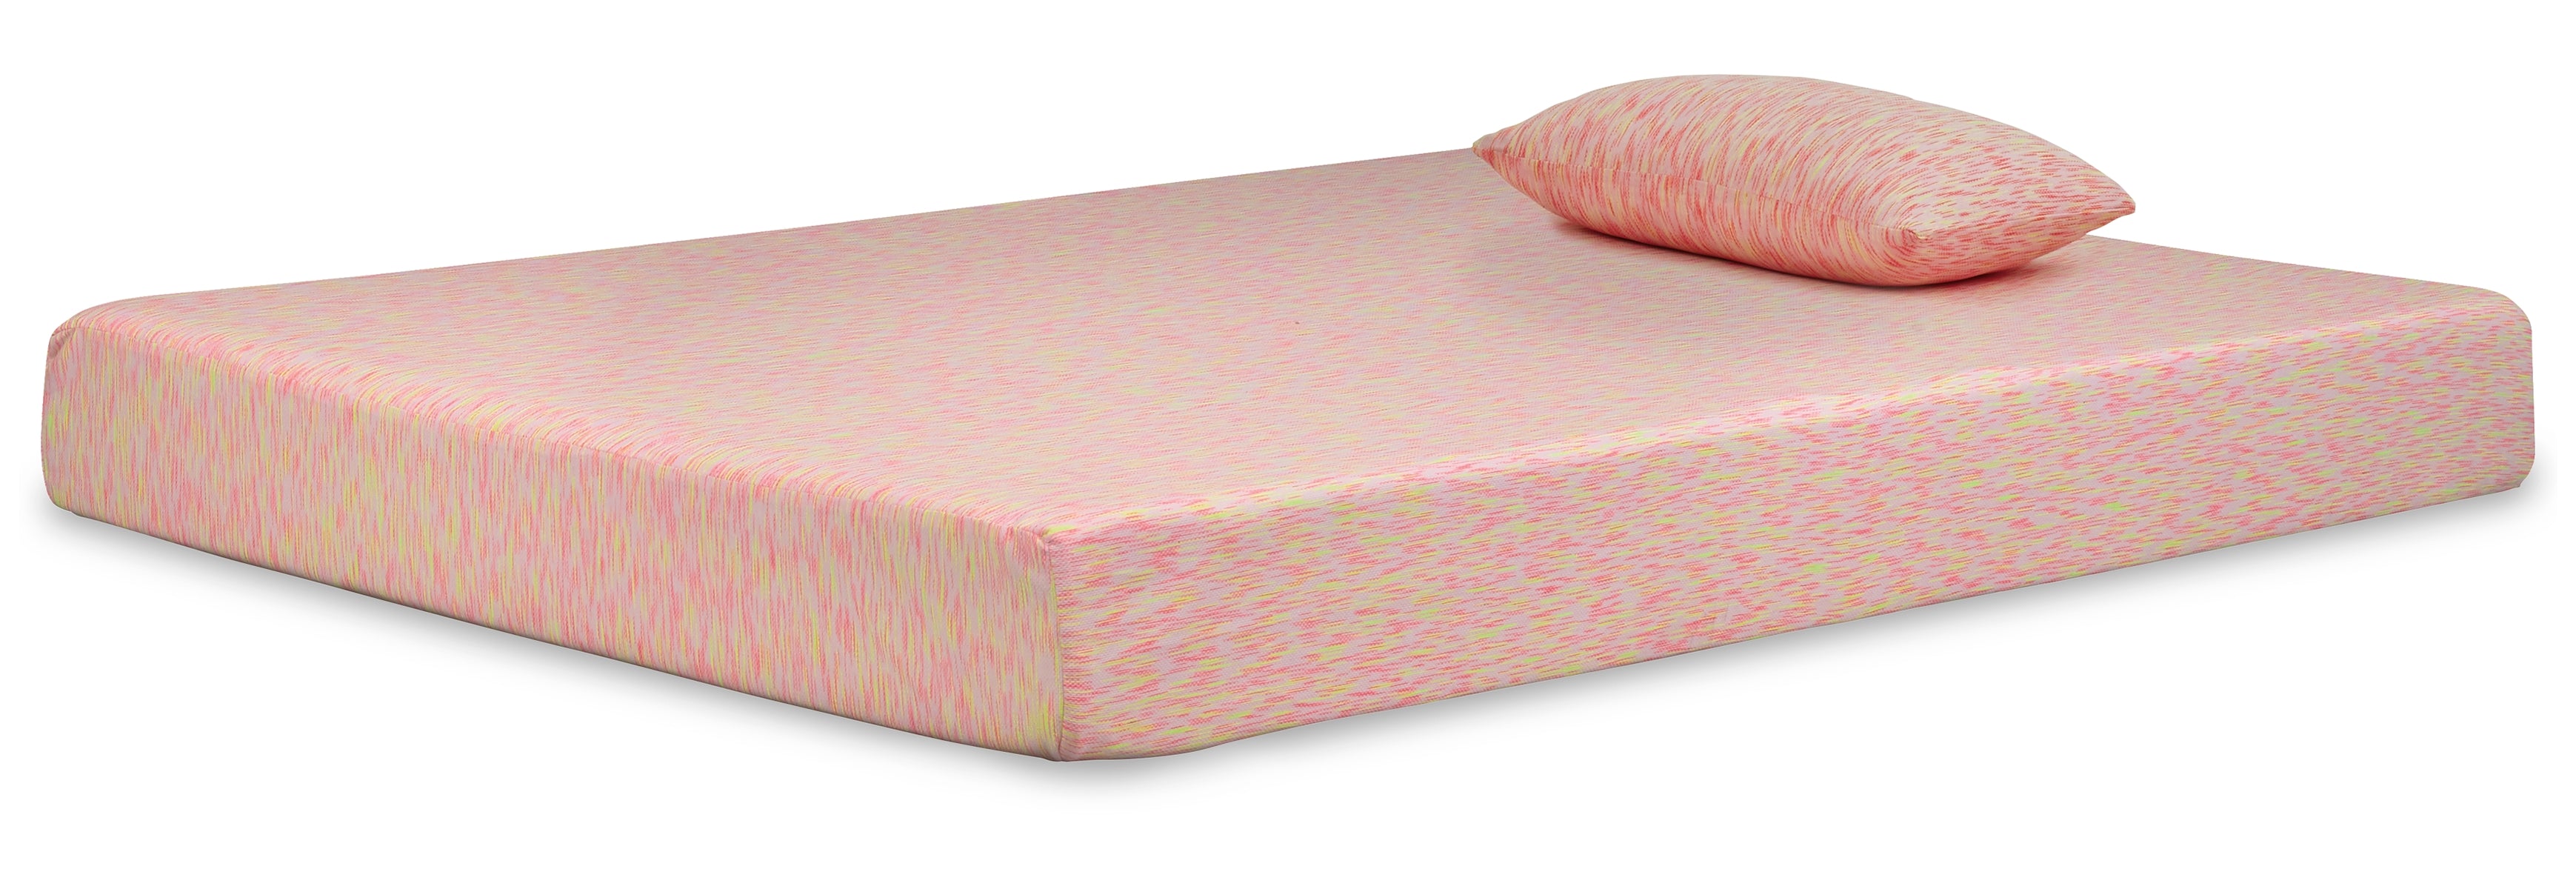 iKidz Pink Full Mattress and Pillow